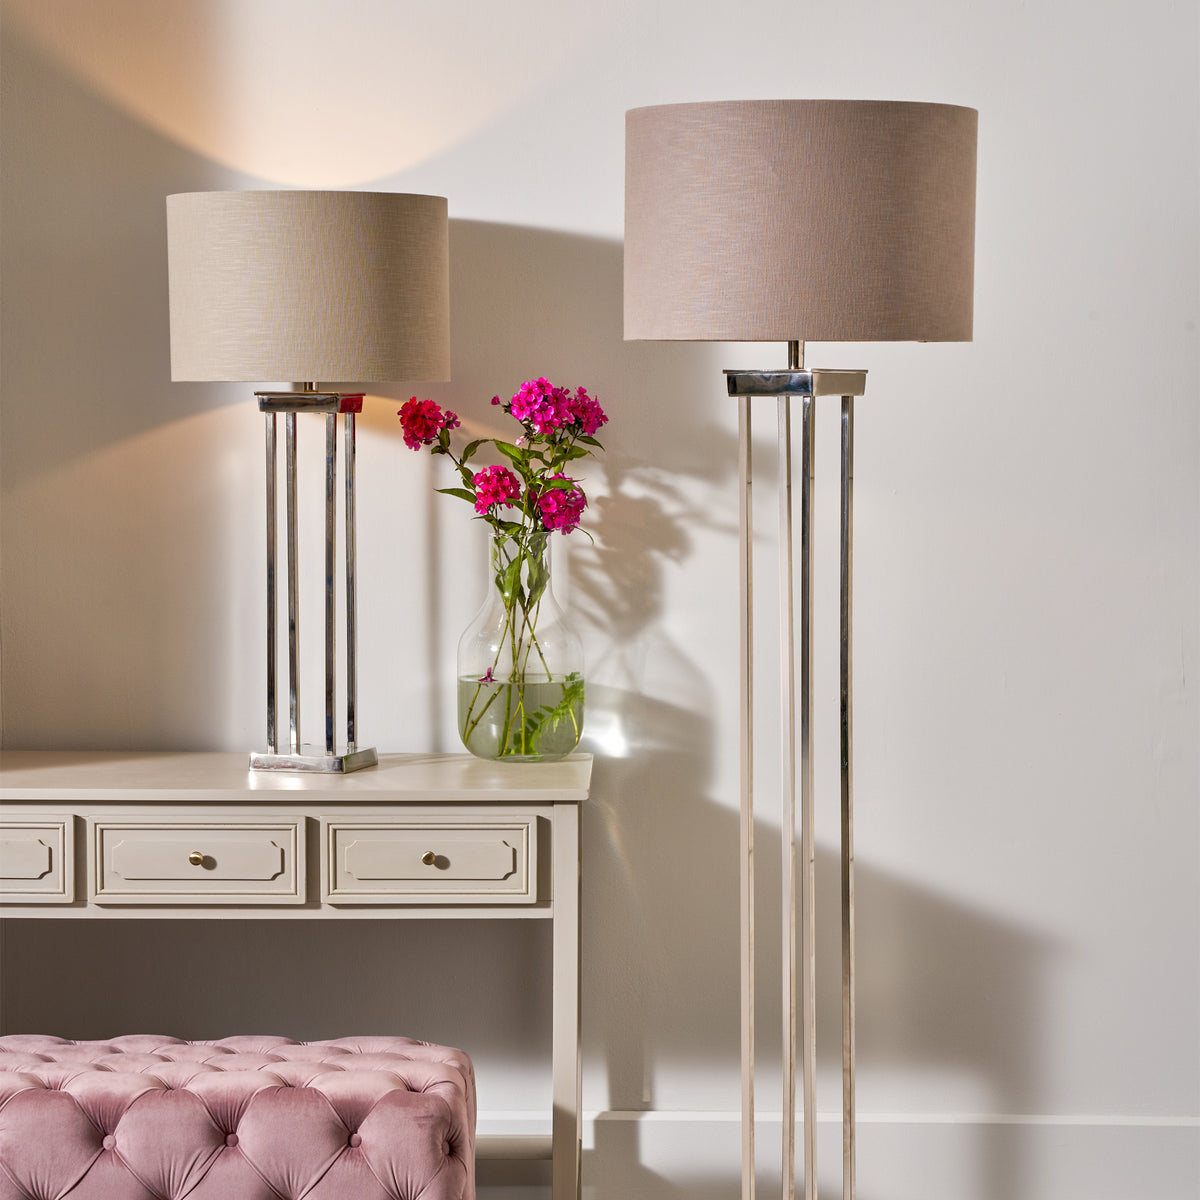 Langston Nickel Metal Column Table Lamp for living room or bedroom